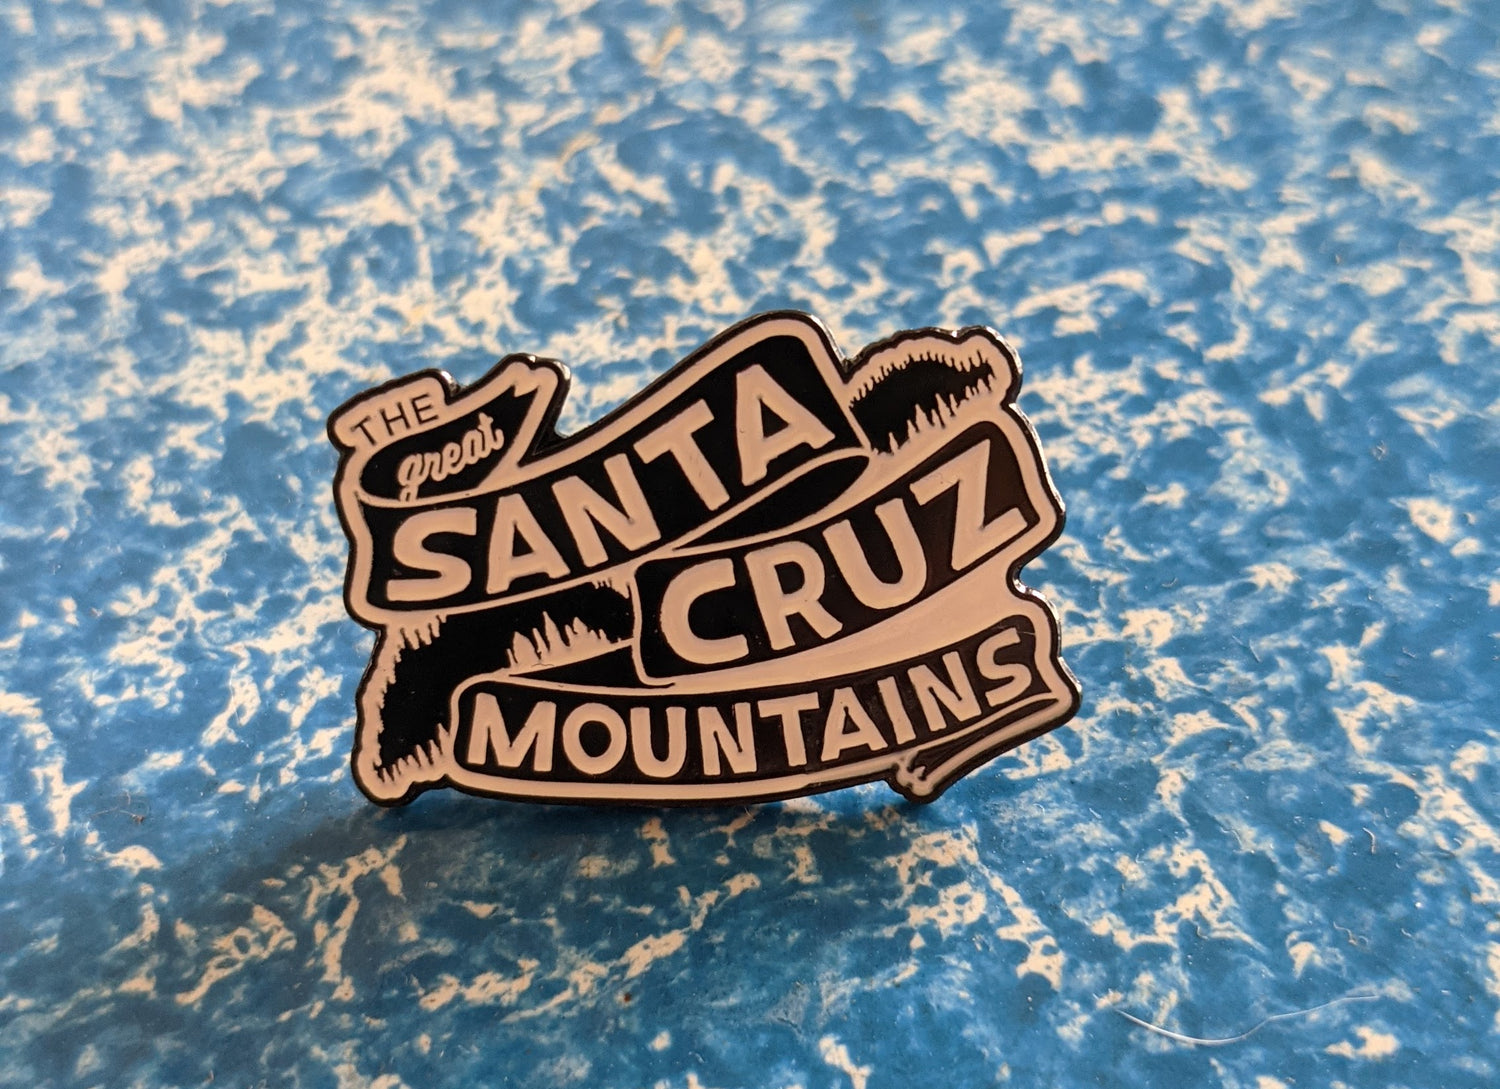 Great Santa Cruz Mountains banner logo enamel pin